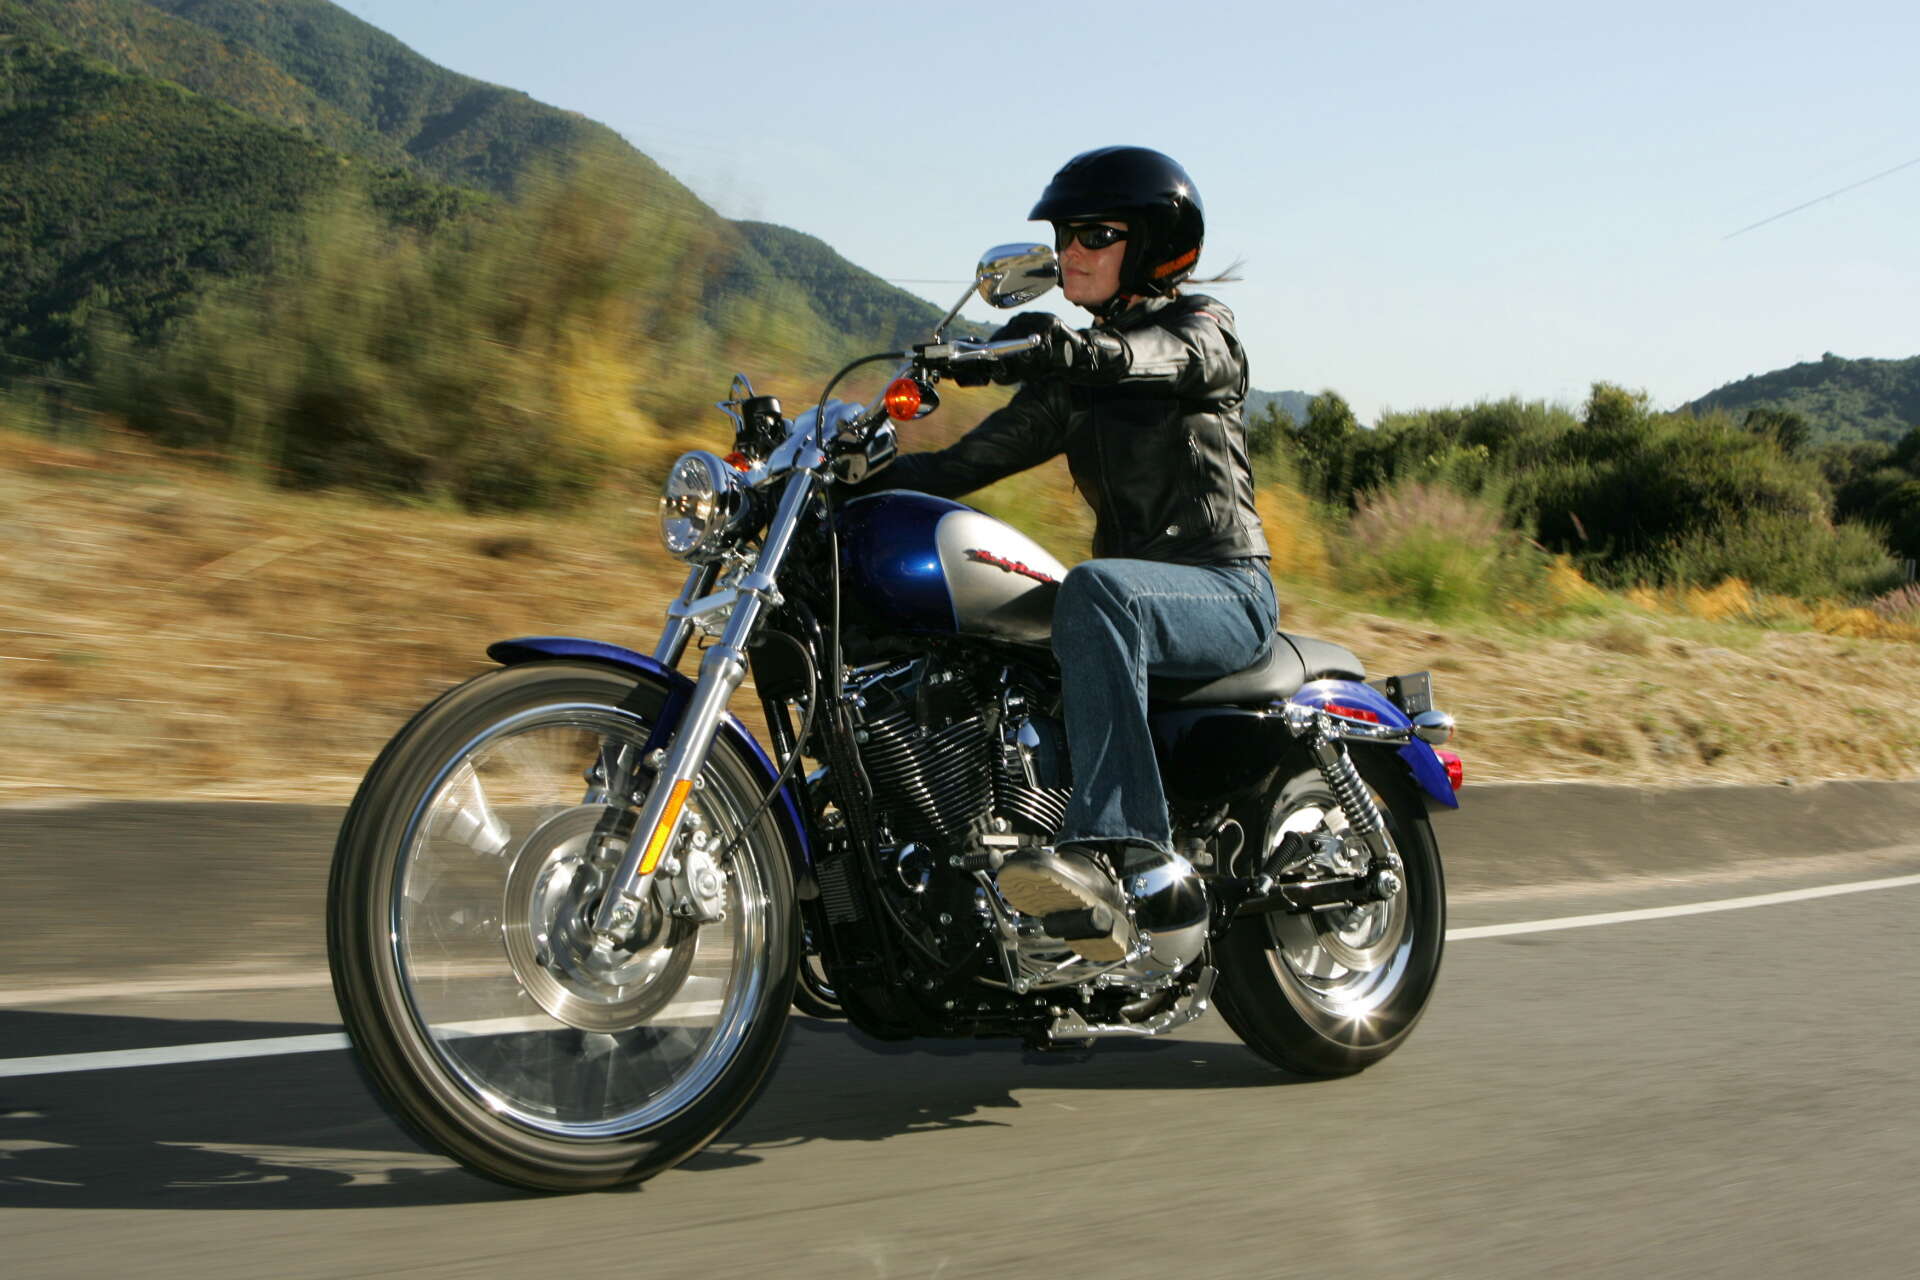 För vissa innebär Harley-Davidson en dröm om frihet och oberoende.